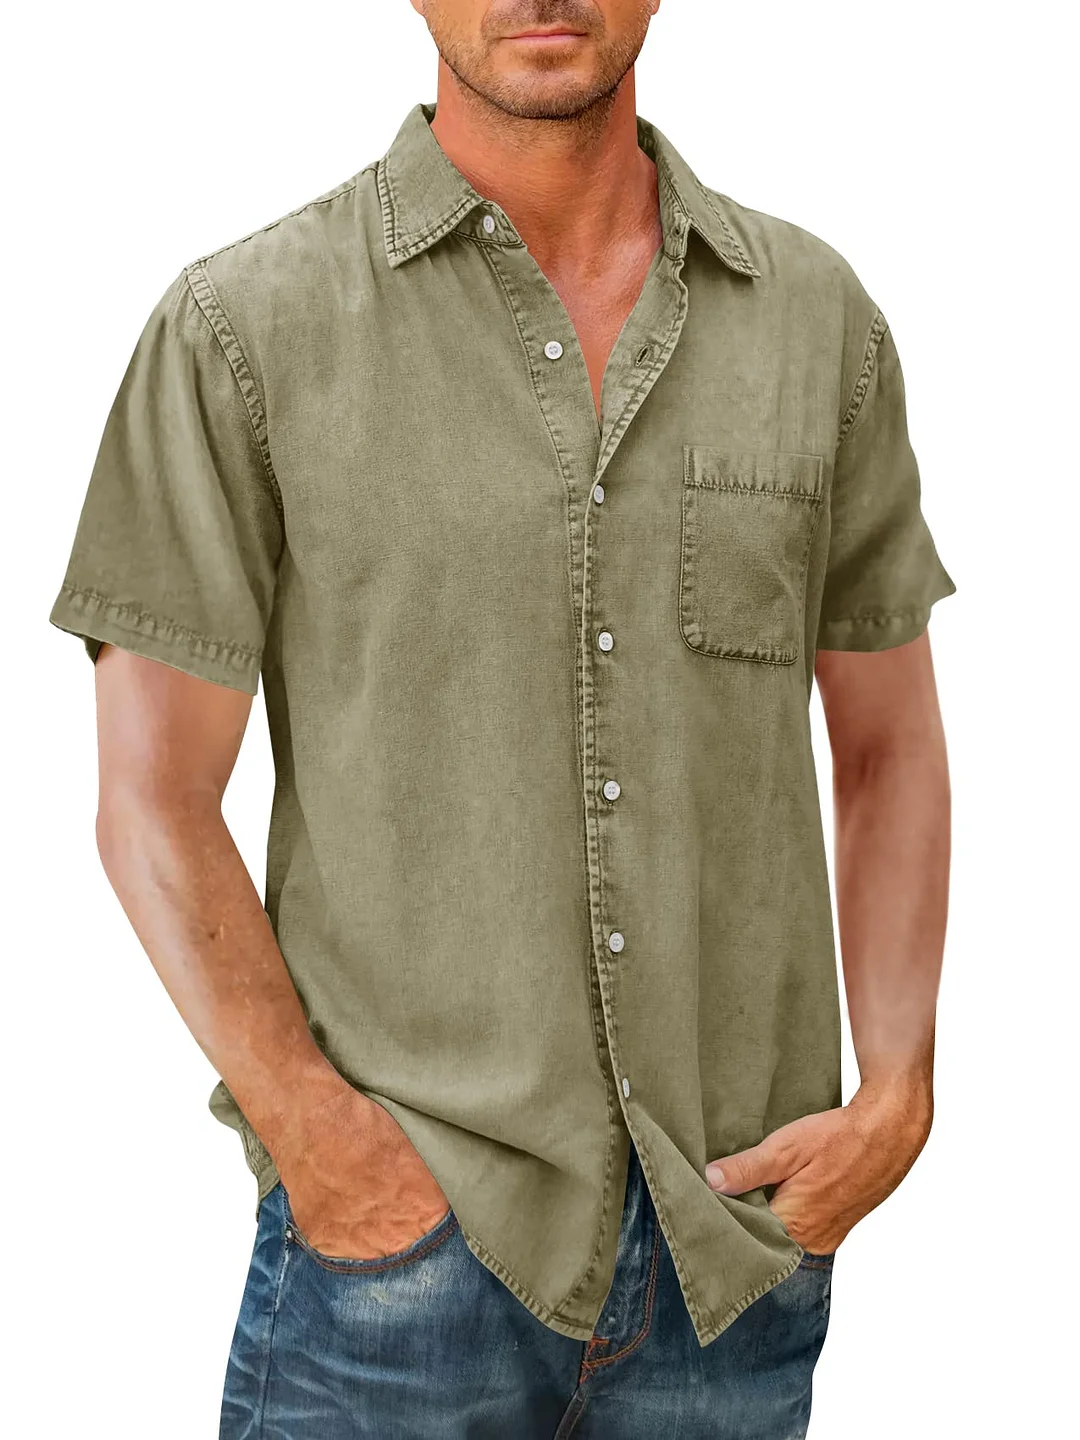 Men's Solid Color Short Sleeve Cotton Shirt